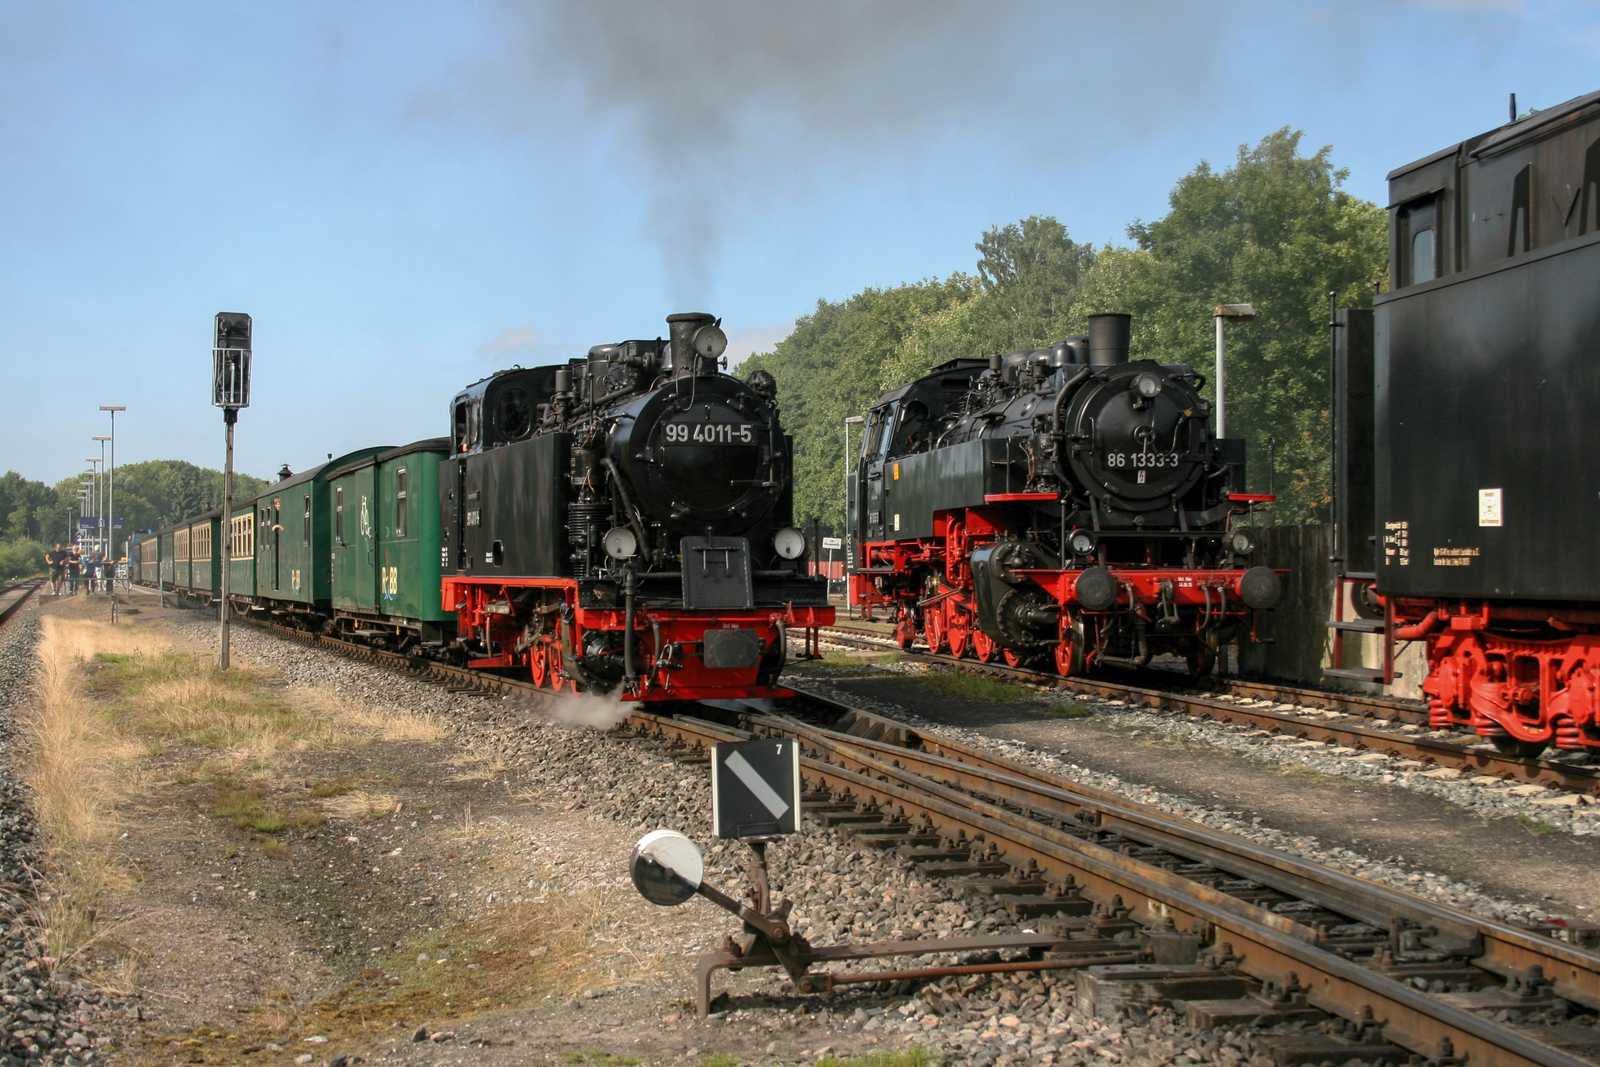 Am 12. Juli begegneten sich 99 4011-5 und 86 1333-3 in Putbus.